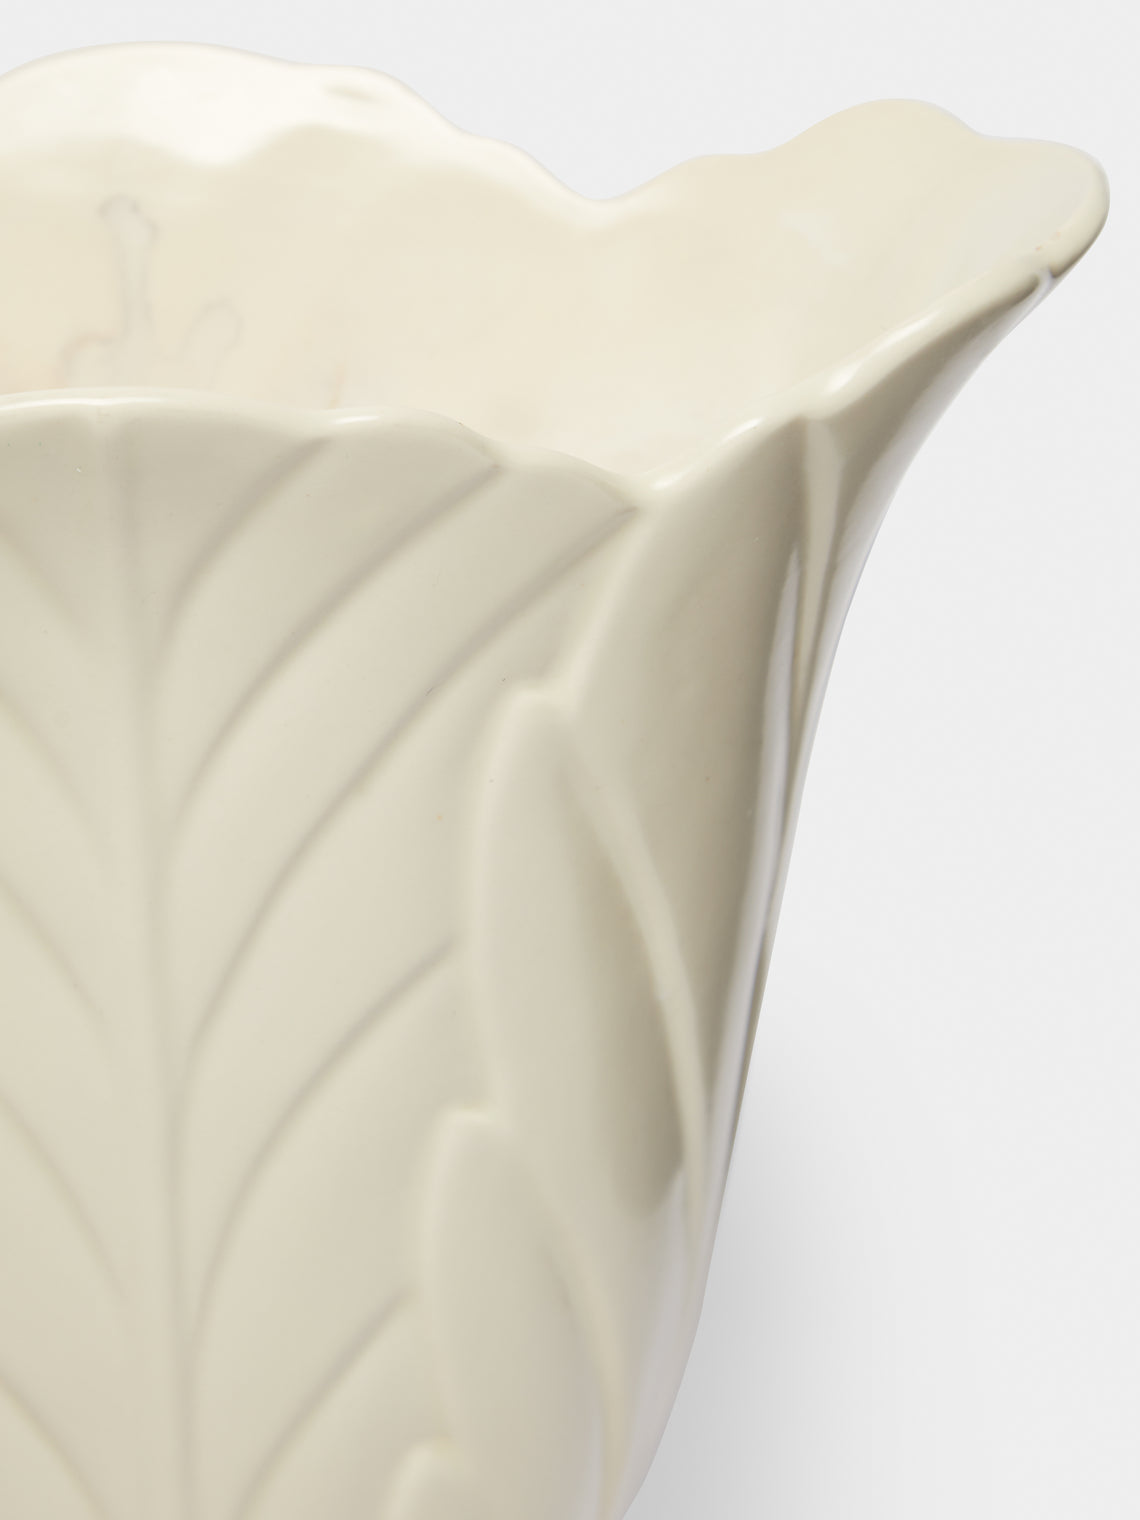 Antique and Vintage - 1930-1940 Leaf Embossed Ceramic Vase - White - ABASK